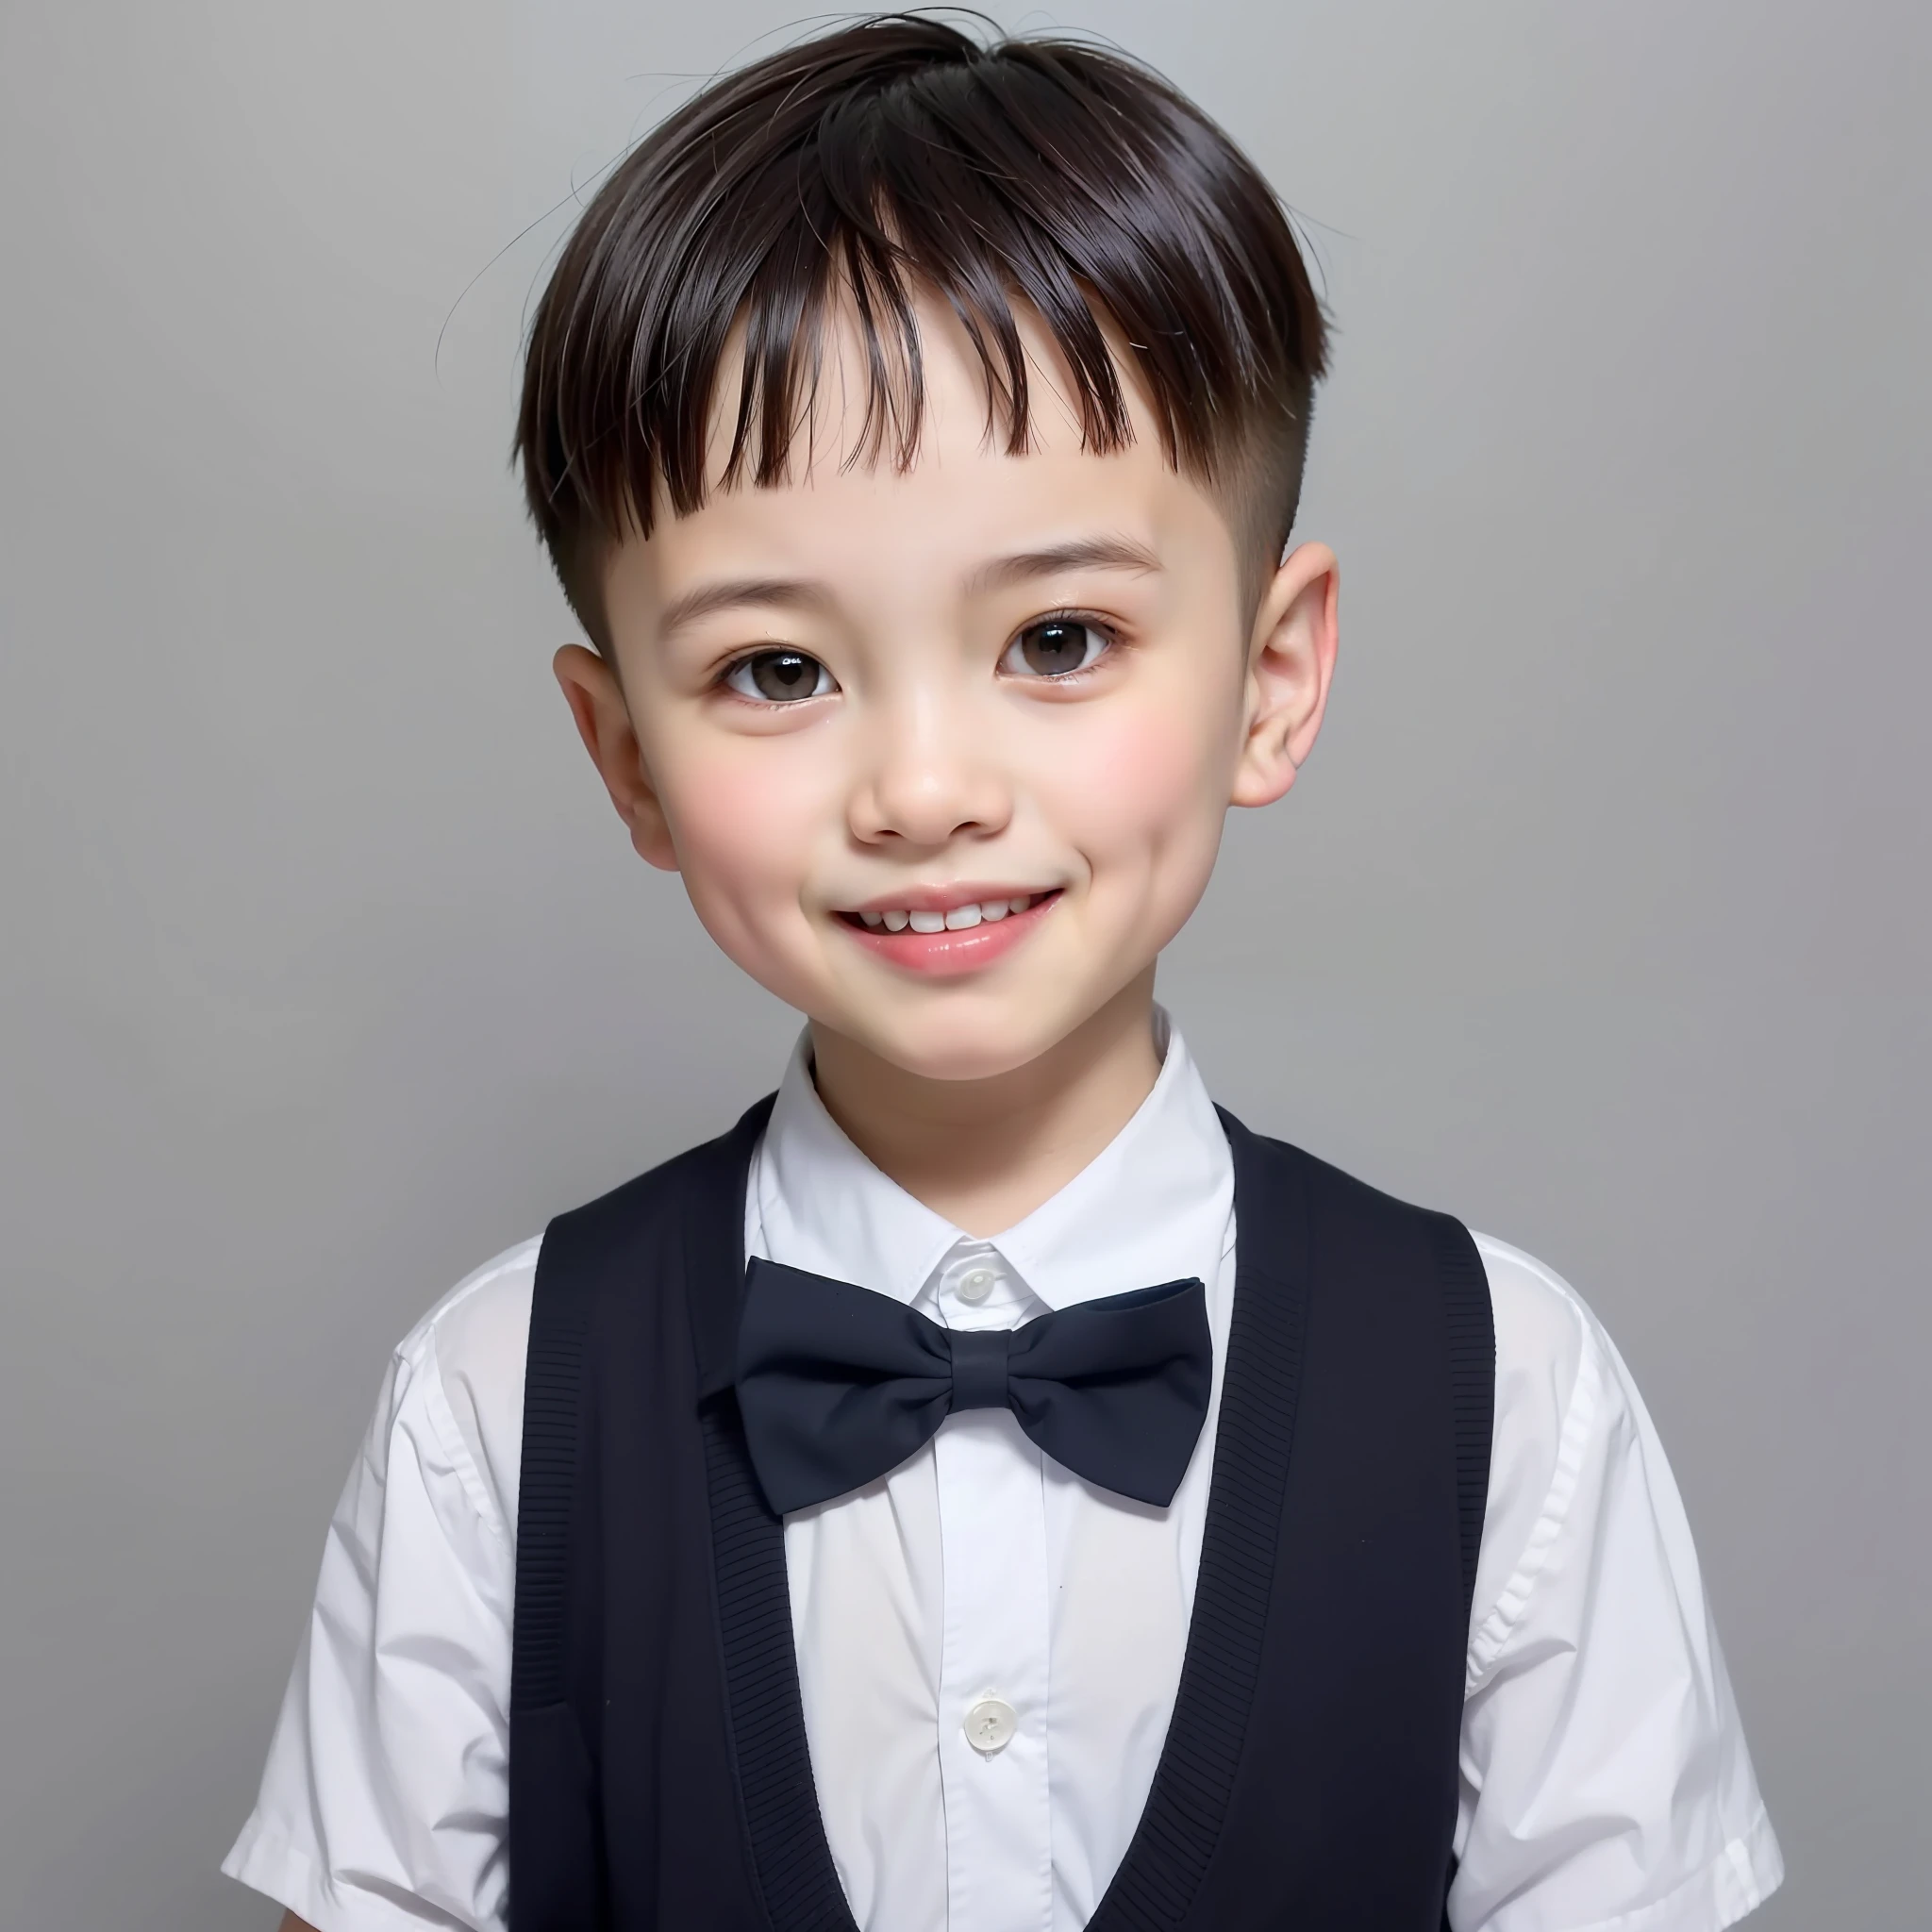 estilo moderno, Fondo blanco, Foto de identificación de niños chinos, elegante, niño sonriente, ojos negros, cabeza plana, corbata de moño